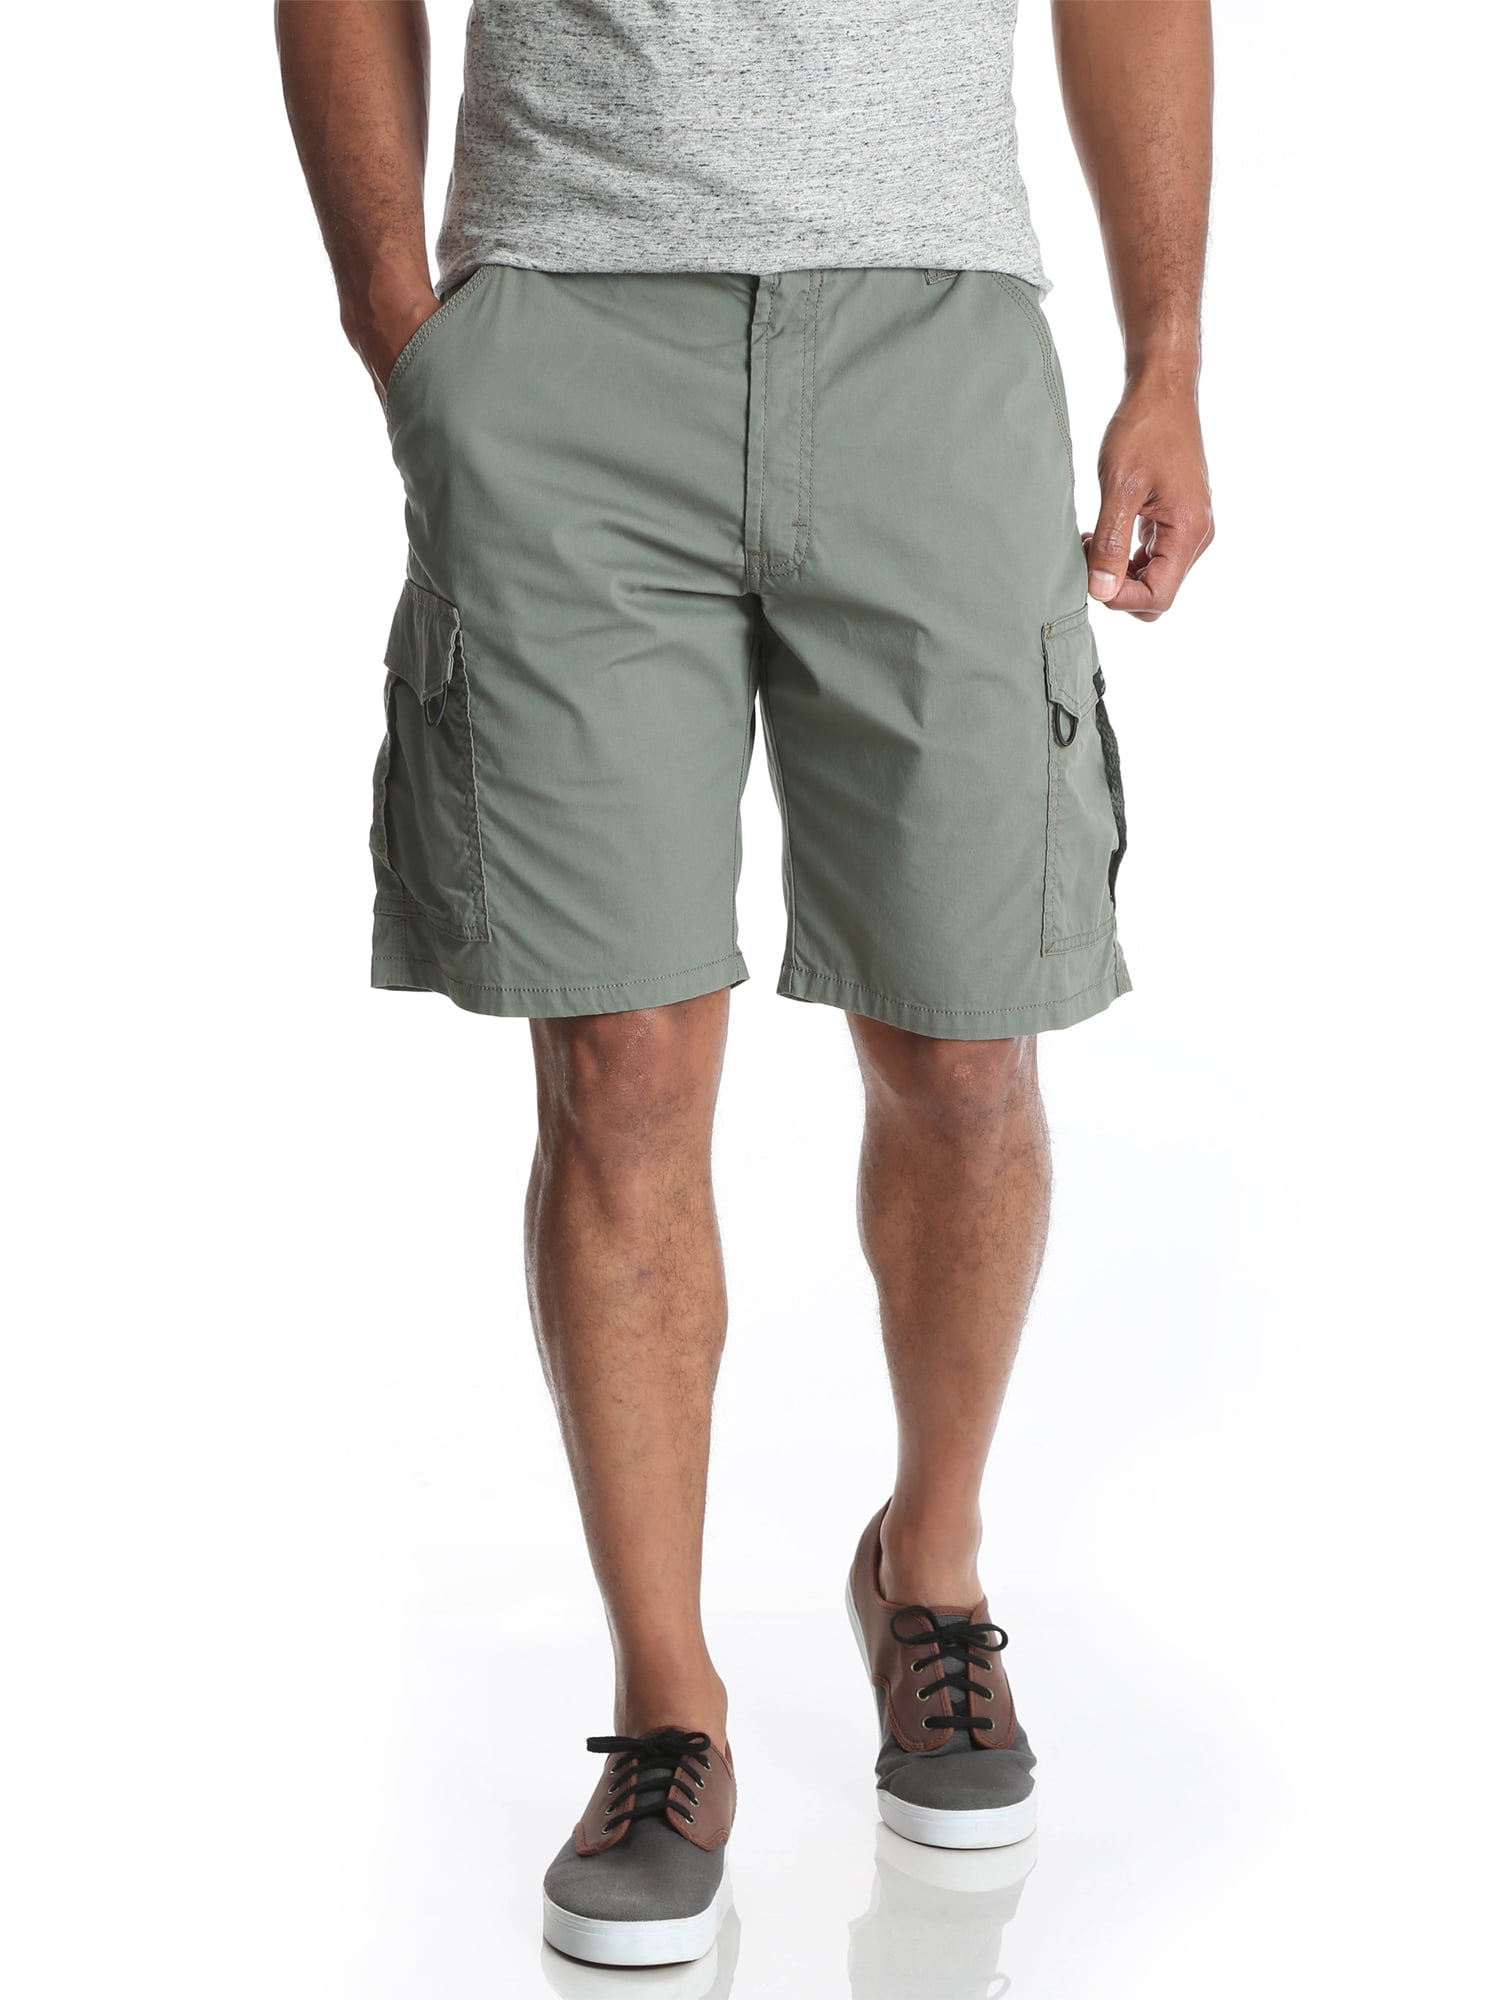 walmart wrangler men's shorts